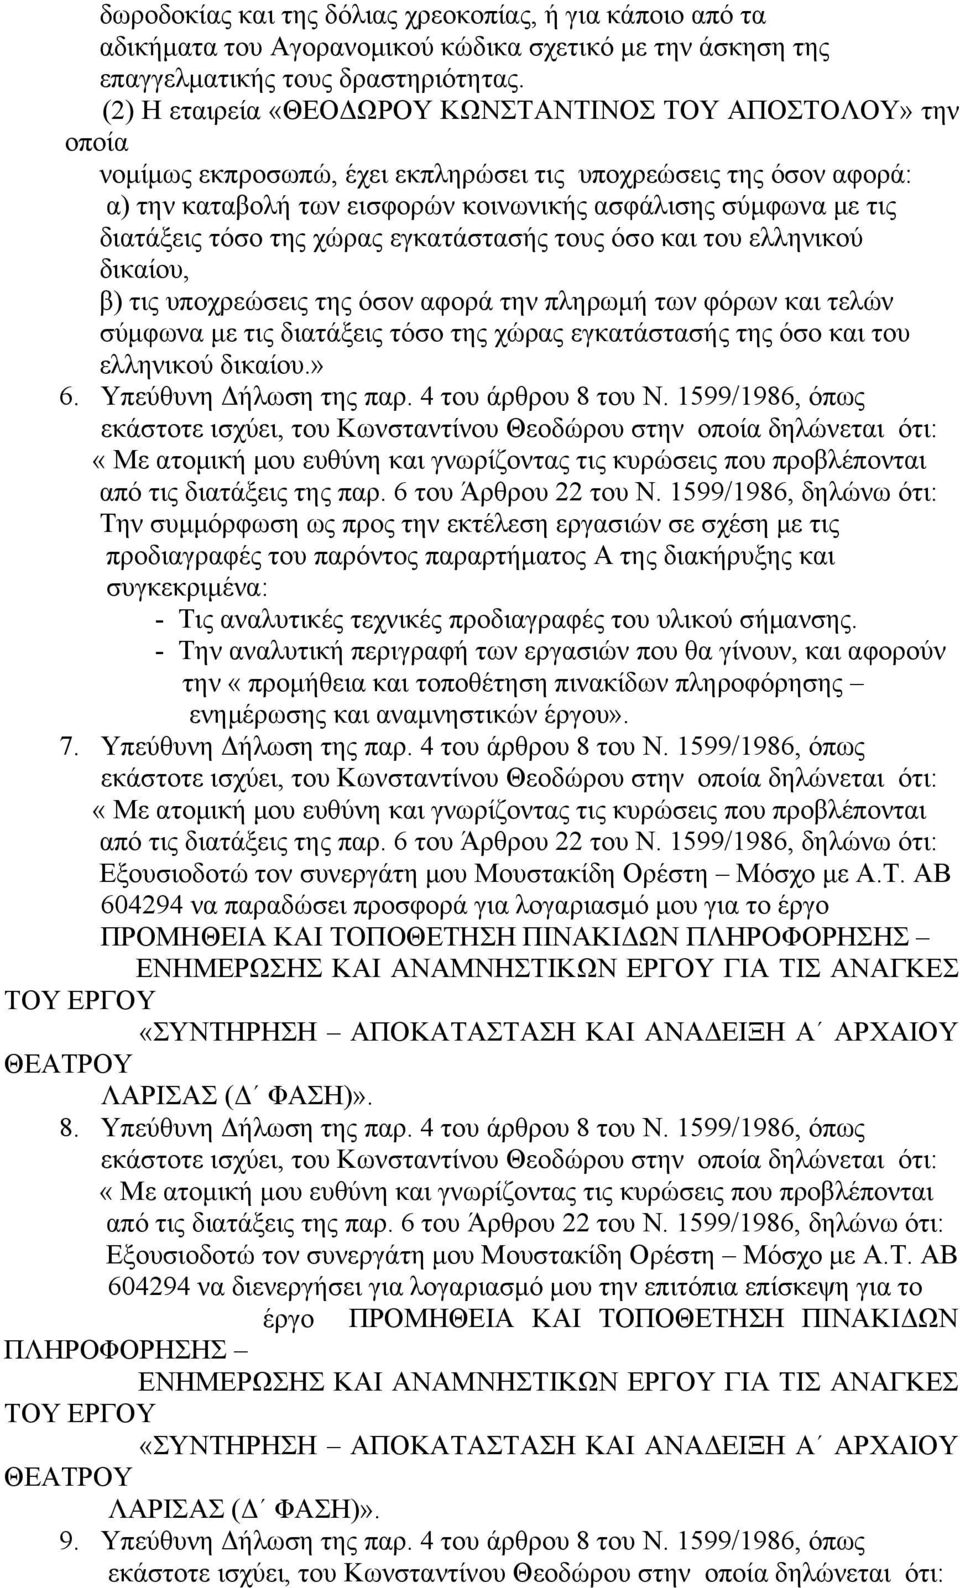 διατάξεις τόσο της χώρας εγκατάστασής τους όσο και του ελληνικού δικαίου, β) τις υποχρεώσεις της όσον αφορά την πληρωμή των φόρων και τελών σύμφωνα με τις διατάξεις τόσο της χώρας εγκατάστασής της